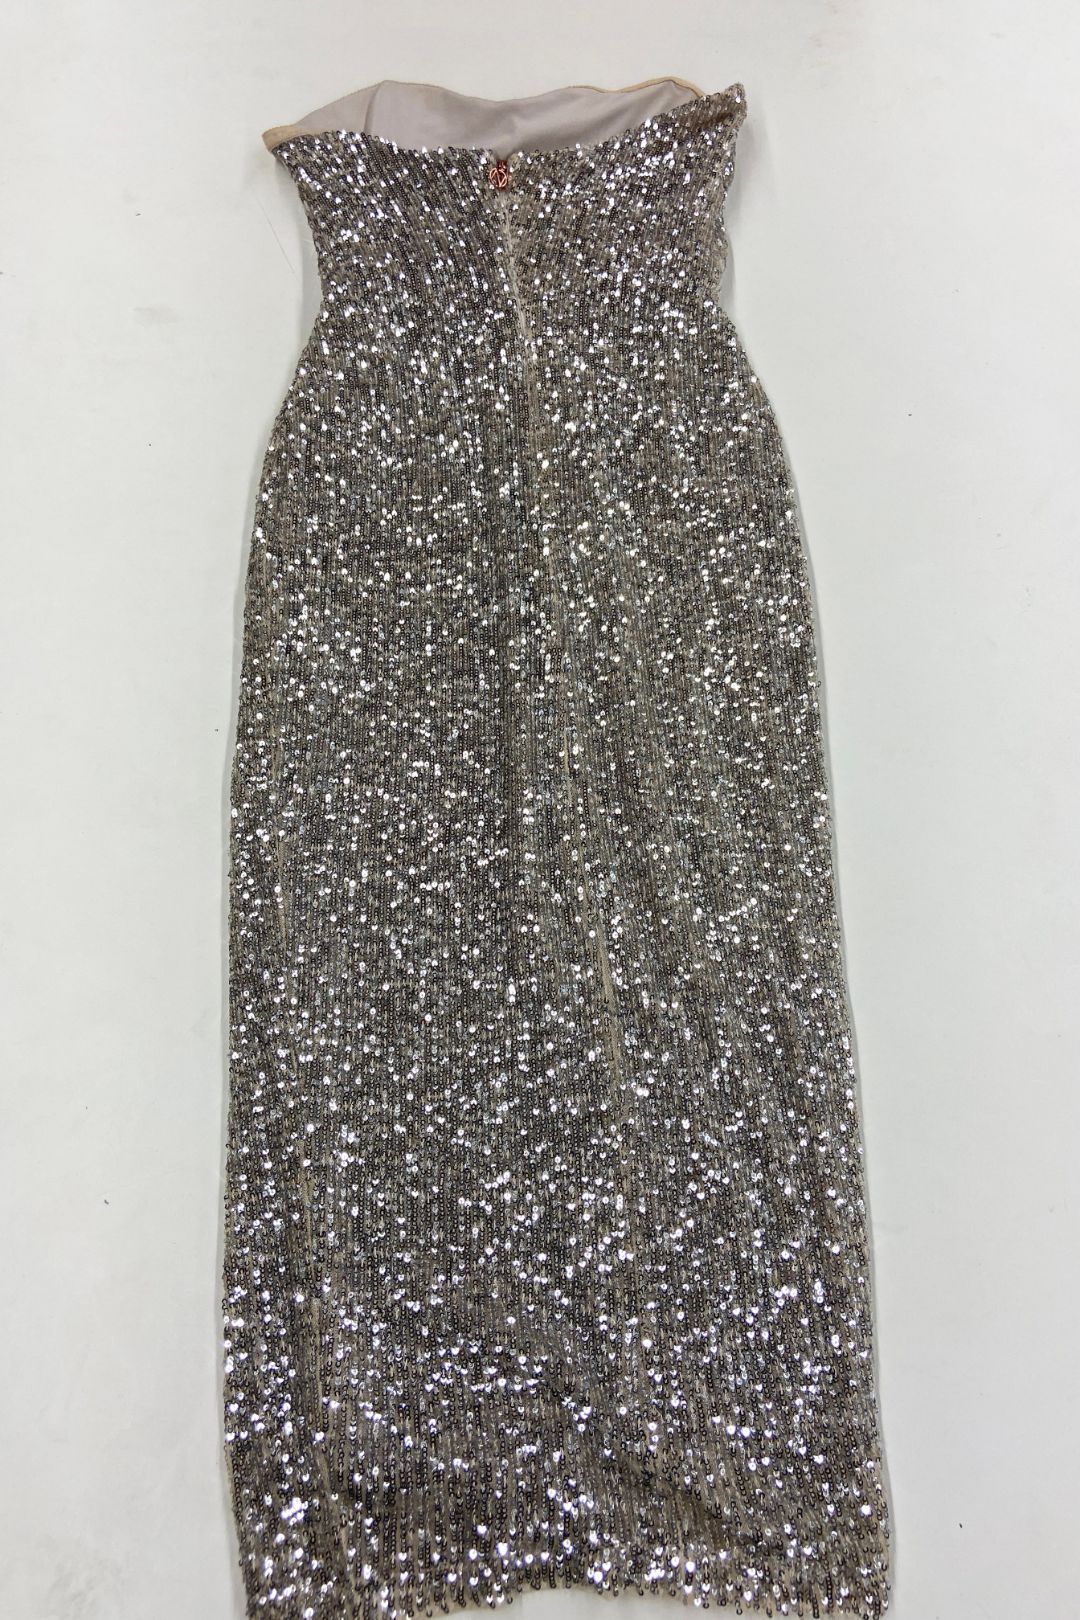 Nookie Fantasy Bodycon Sequin Dress in Silver